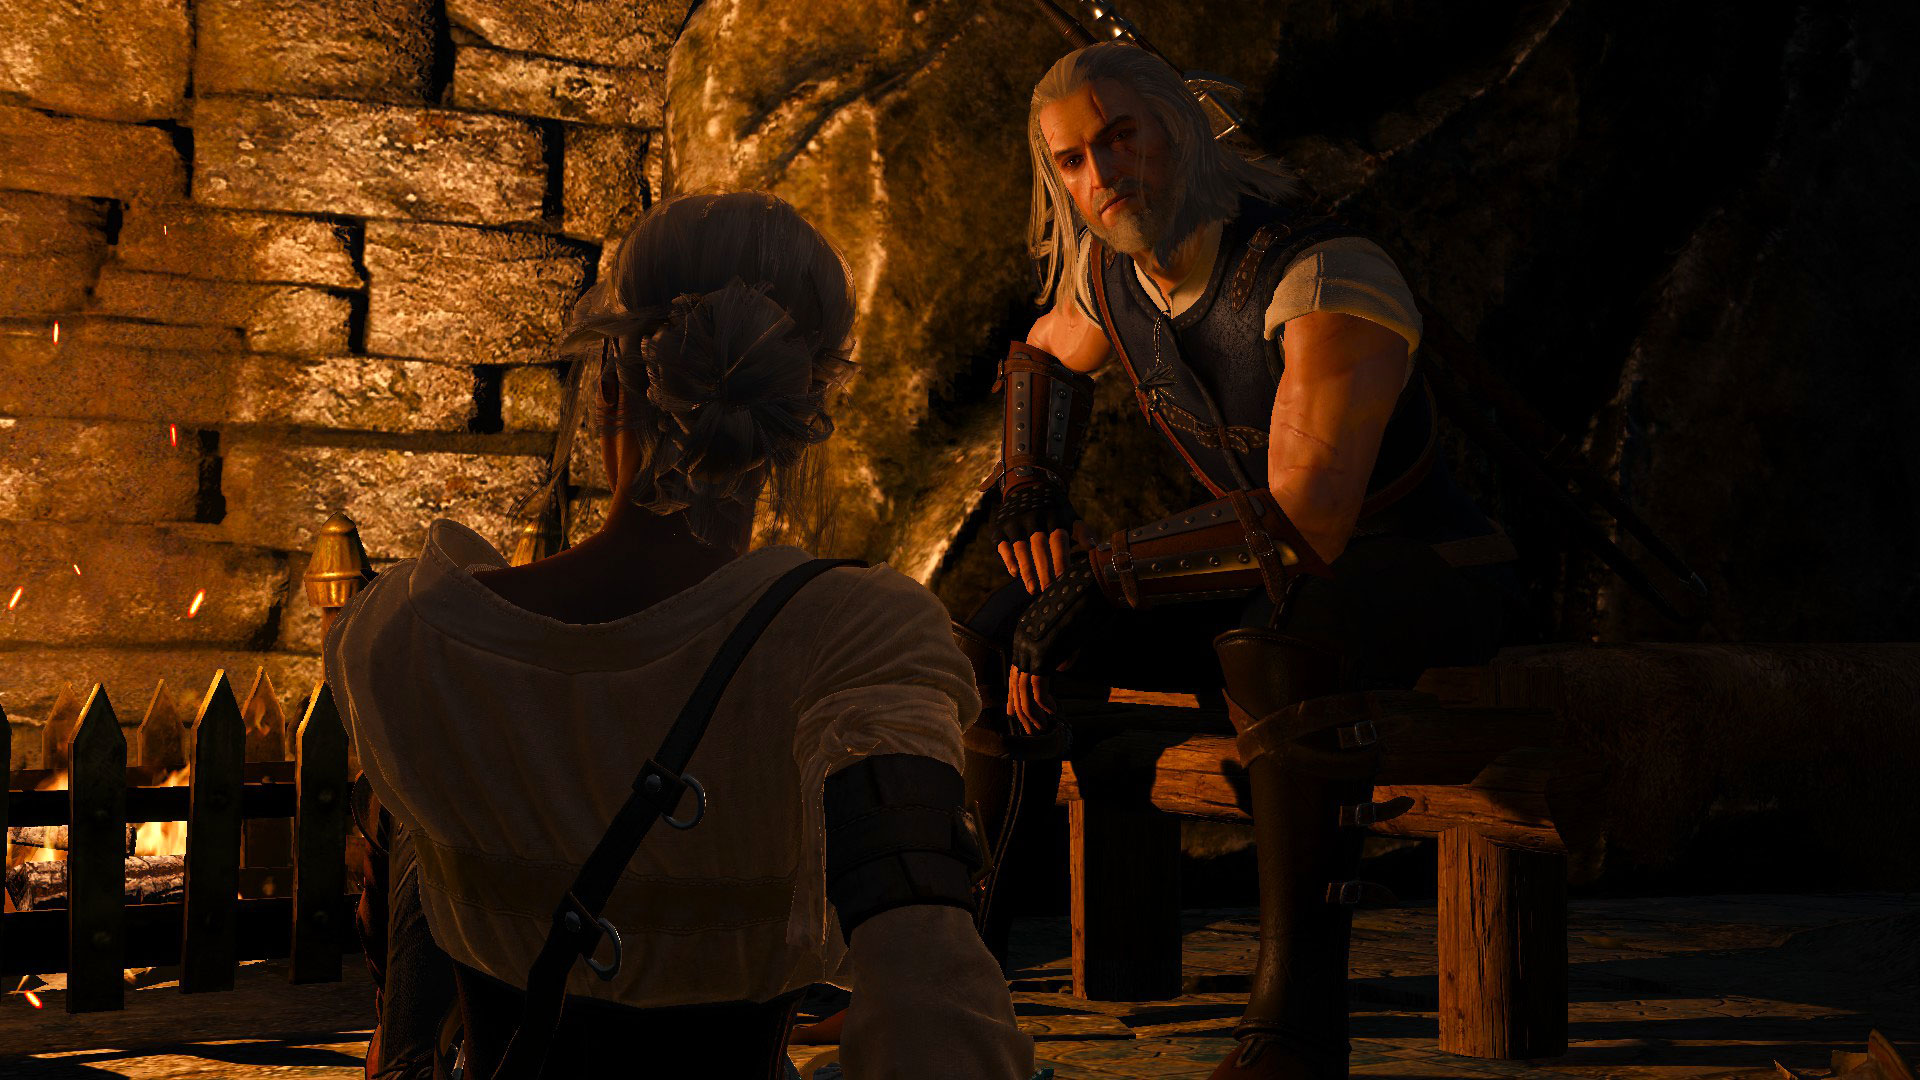 Ciri And Geralt Meet